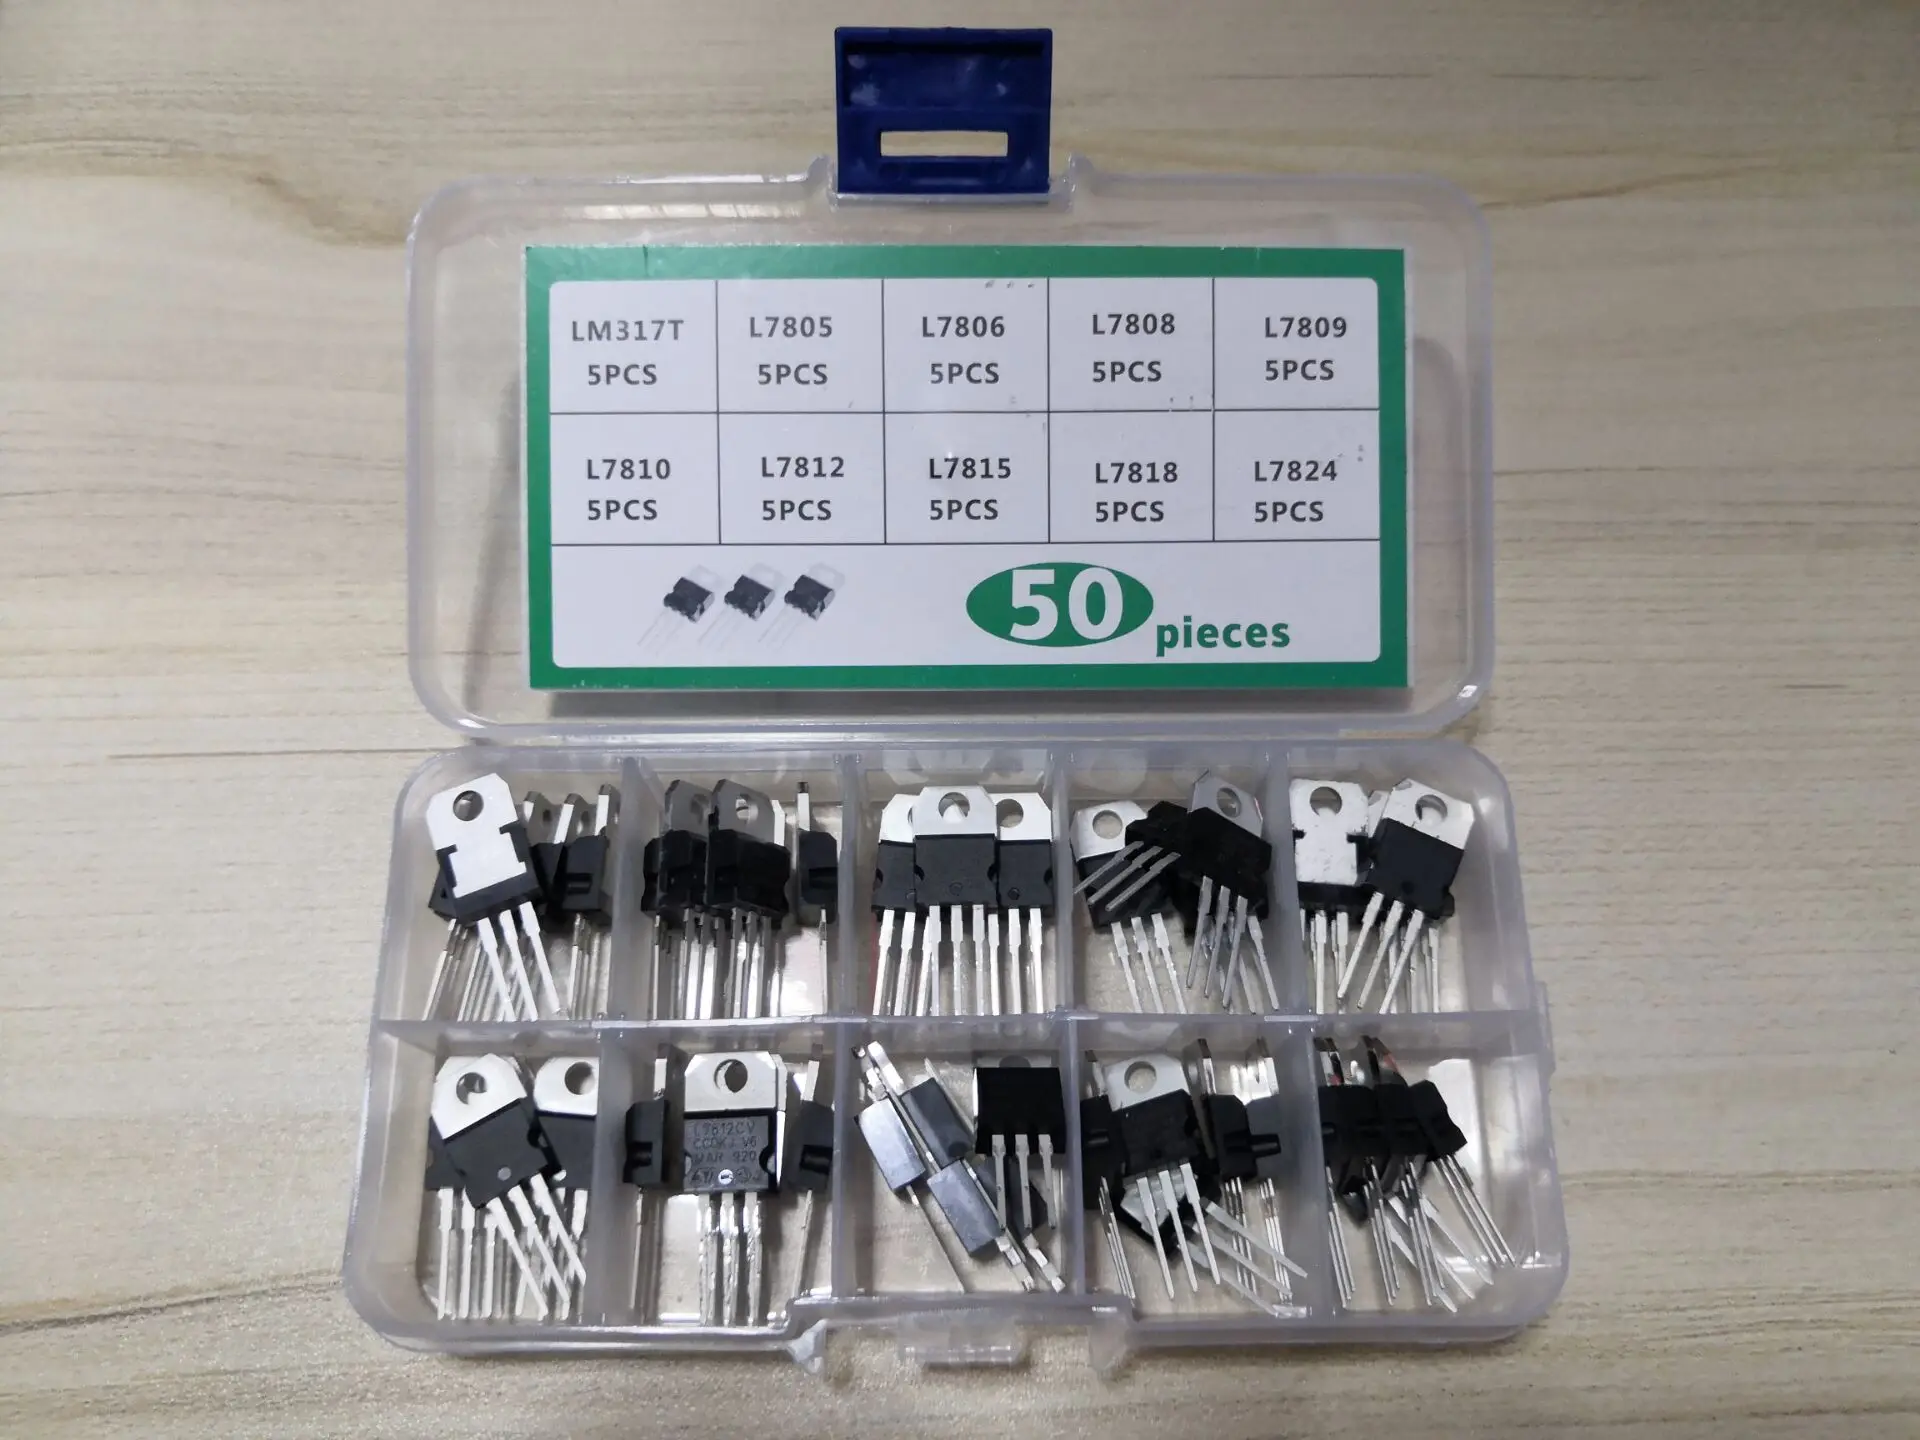 

1box 50pcs 10 Values Transistor Kit L7805 L7806 L7808 L7809 7810 L7812 7815 7818 7824/CV LM317T Three-Terminal Voltage Regulator